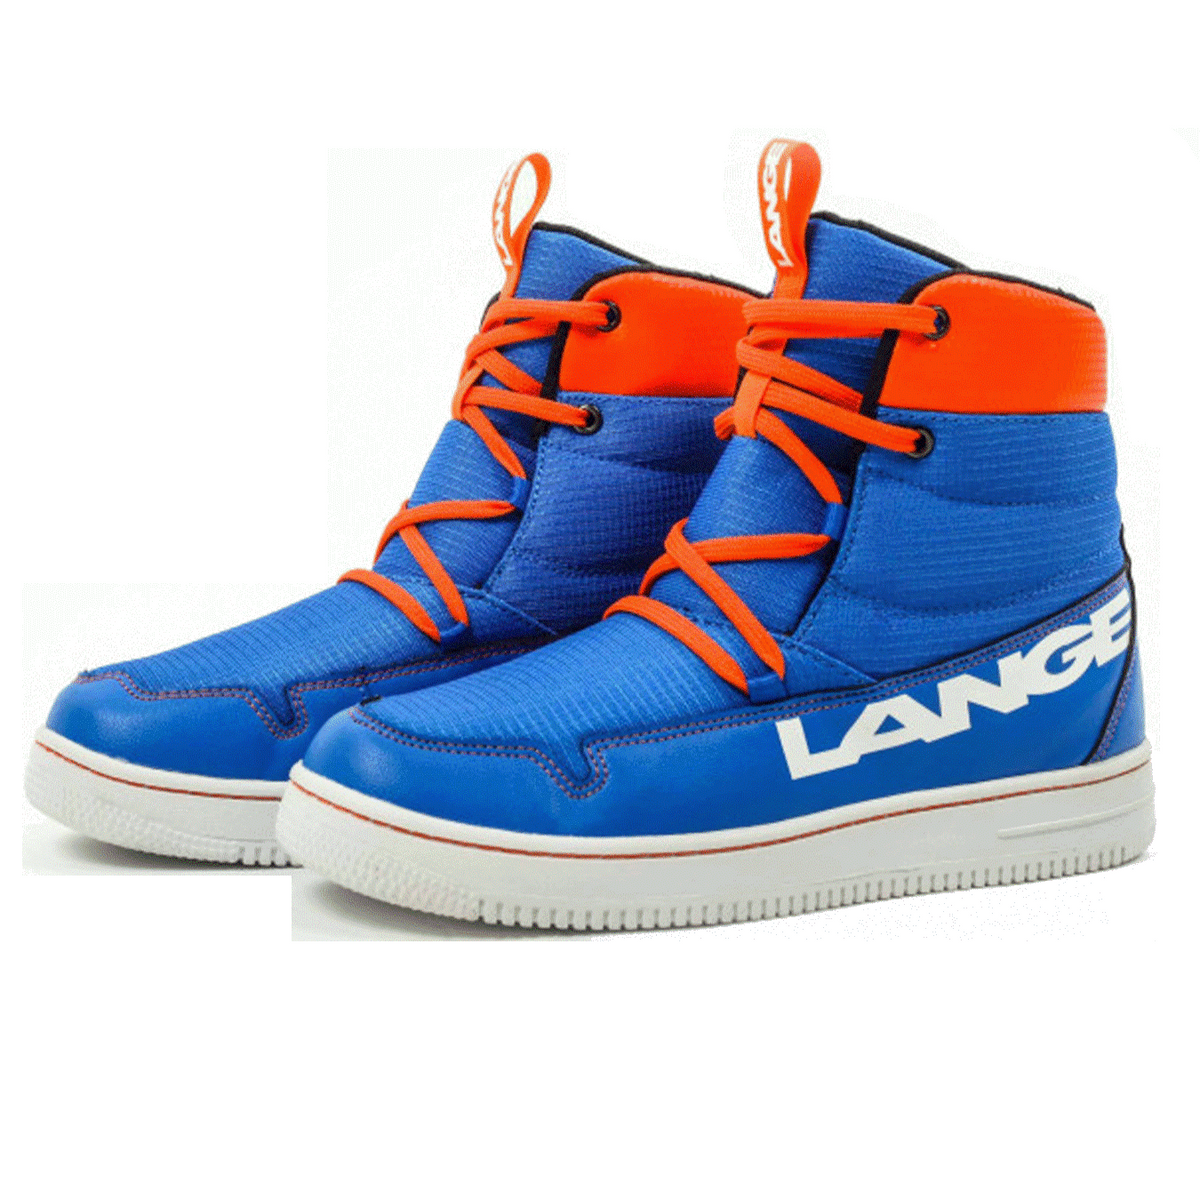 Lange Bottes D'hiver Podium Lange Soft Shoe Homme